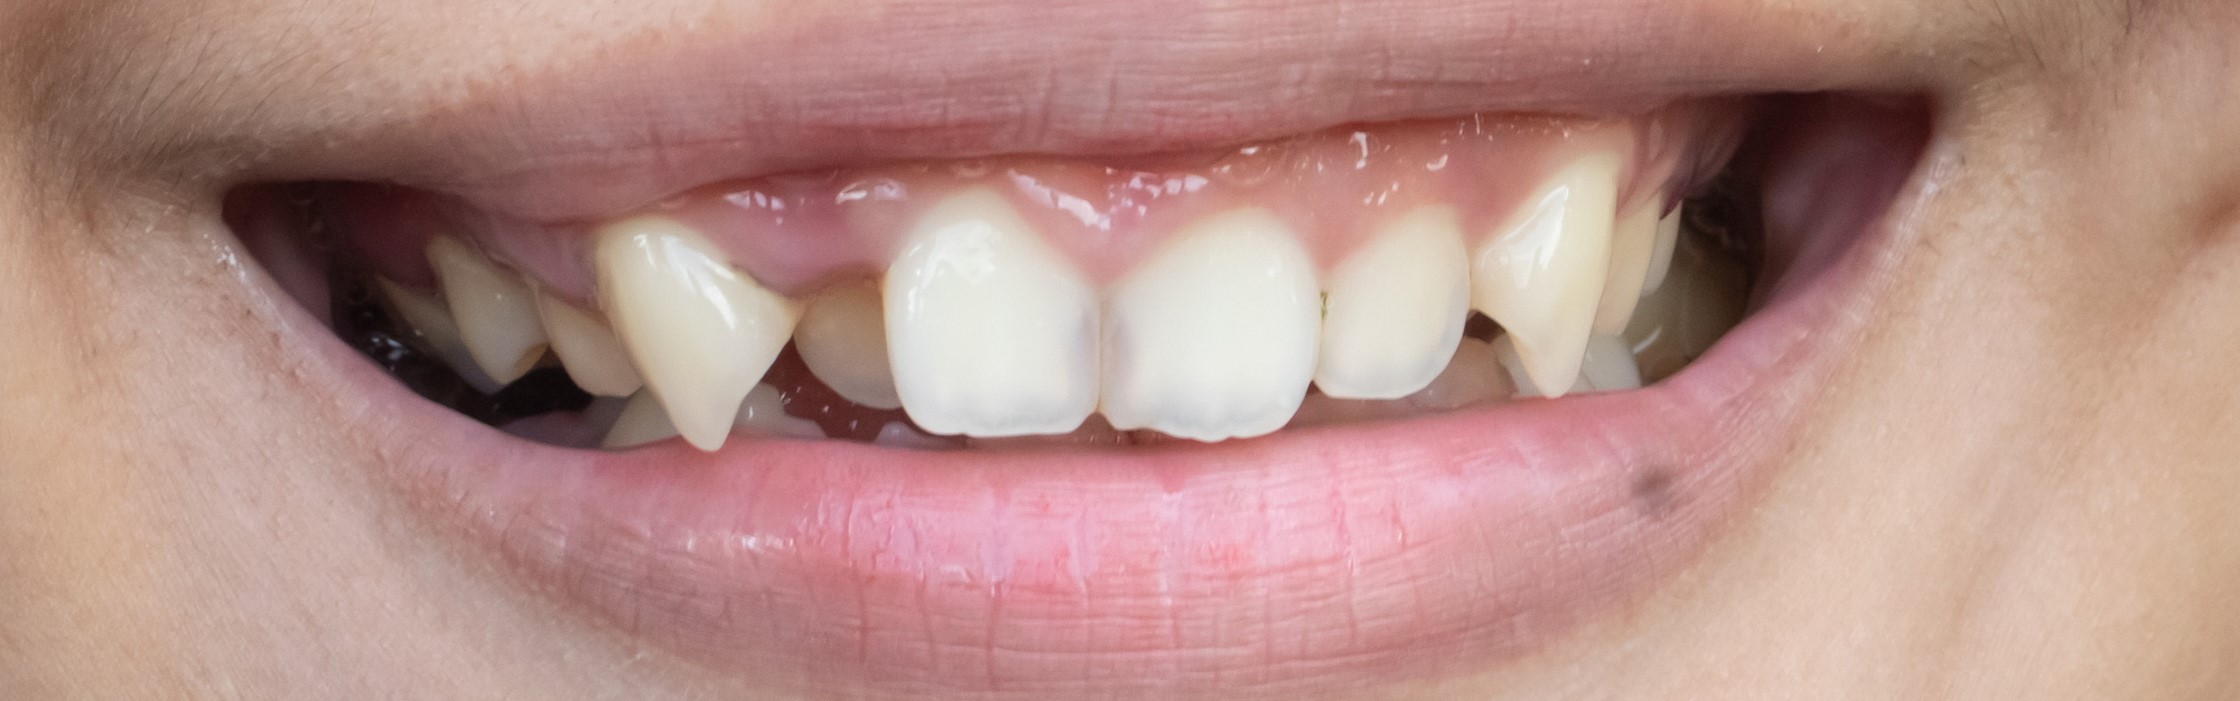 Schiefe Zähne – Ursachen und Behandlung von Fehlstellungen